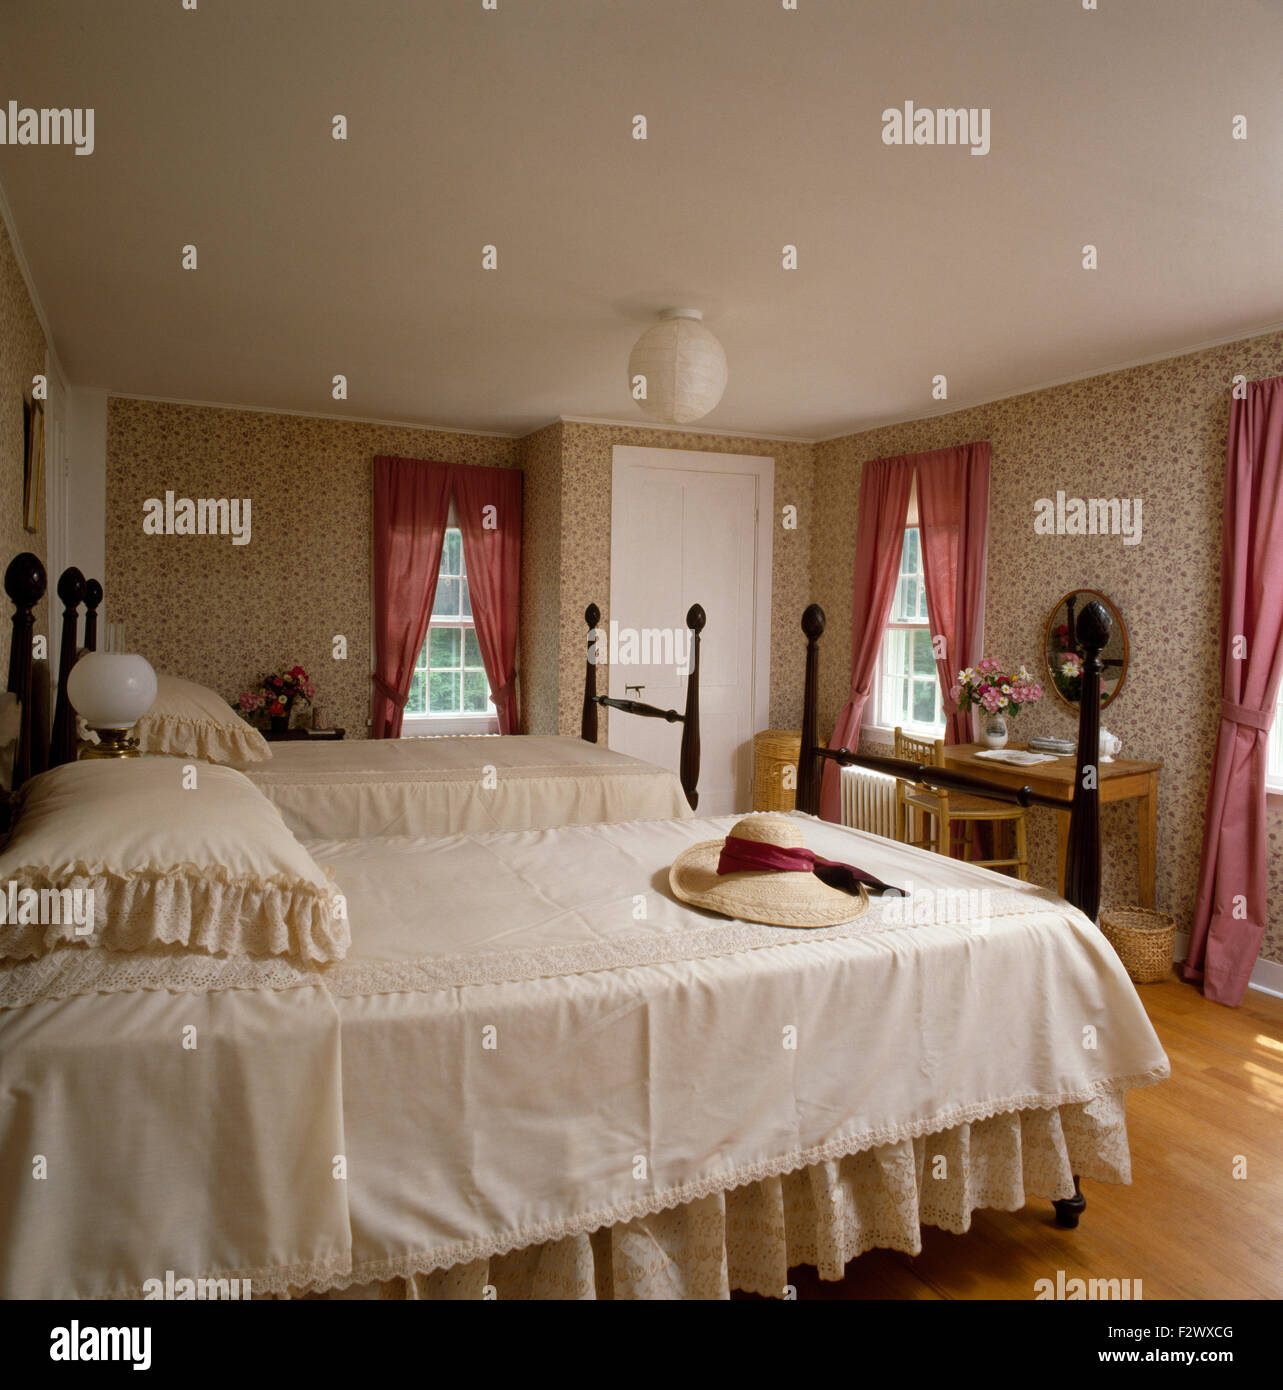 Spitze Kanten Bettdecke auf zwei Einzelbetten mit gedrehten Spindeln in neunziger Jahre Schlafzimmer Stockfoto